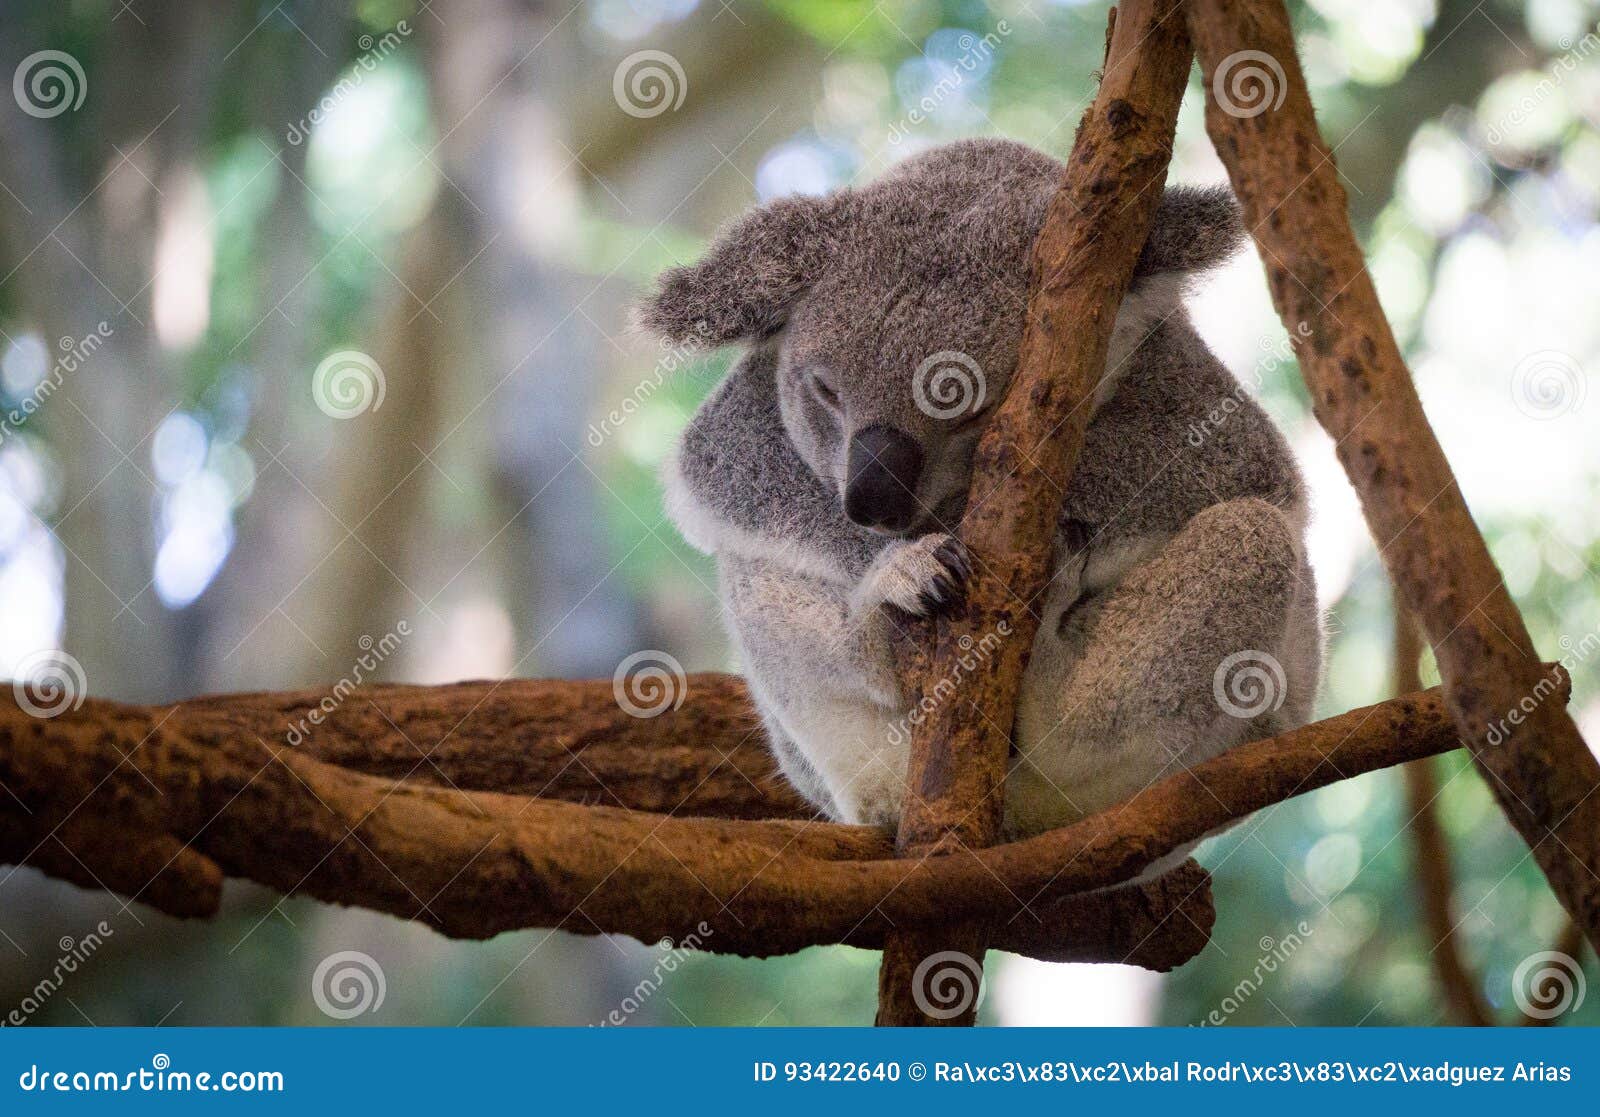 cute koala resting at the zoo, brisbane, australia